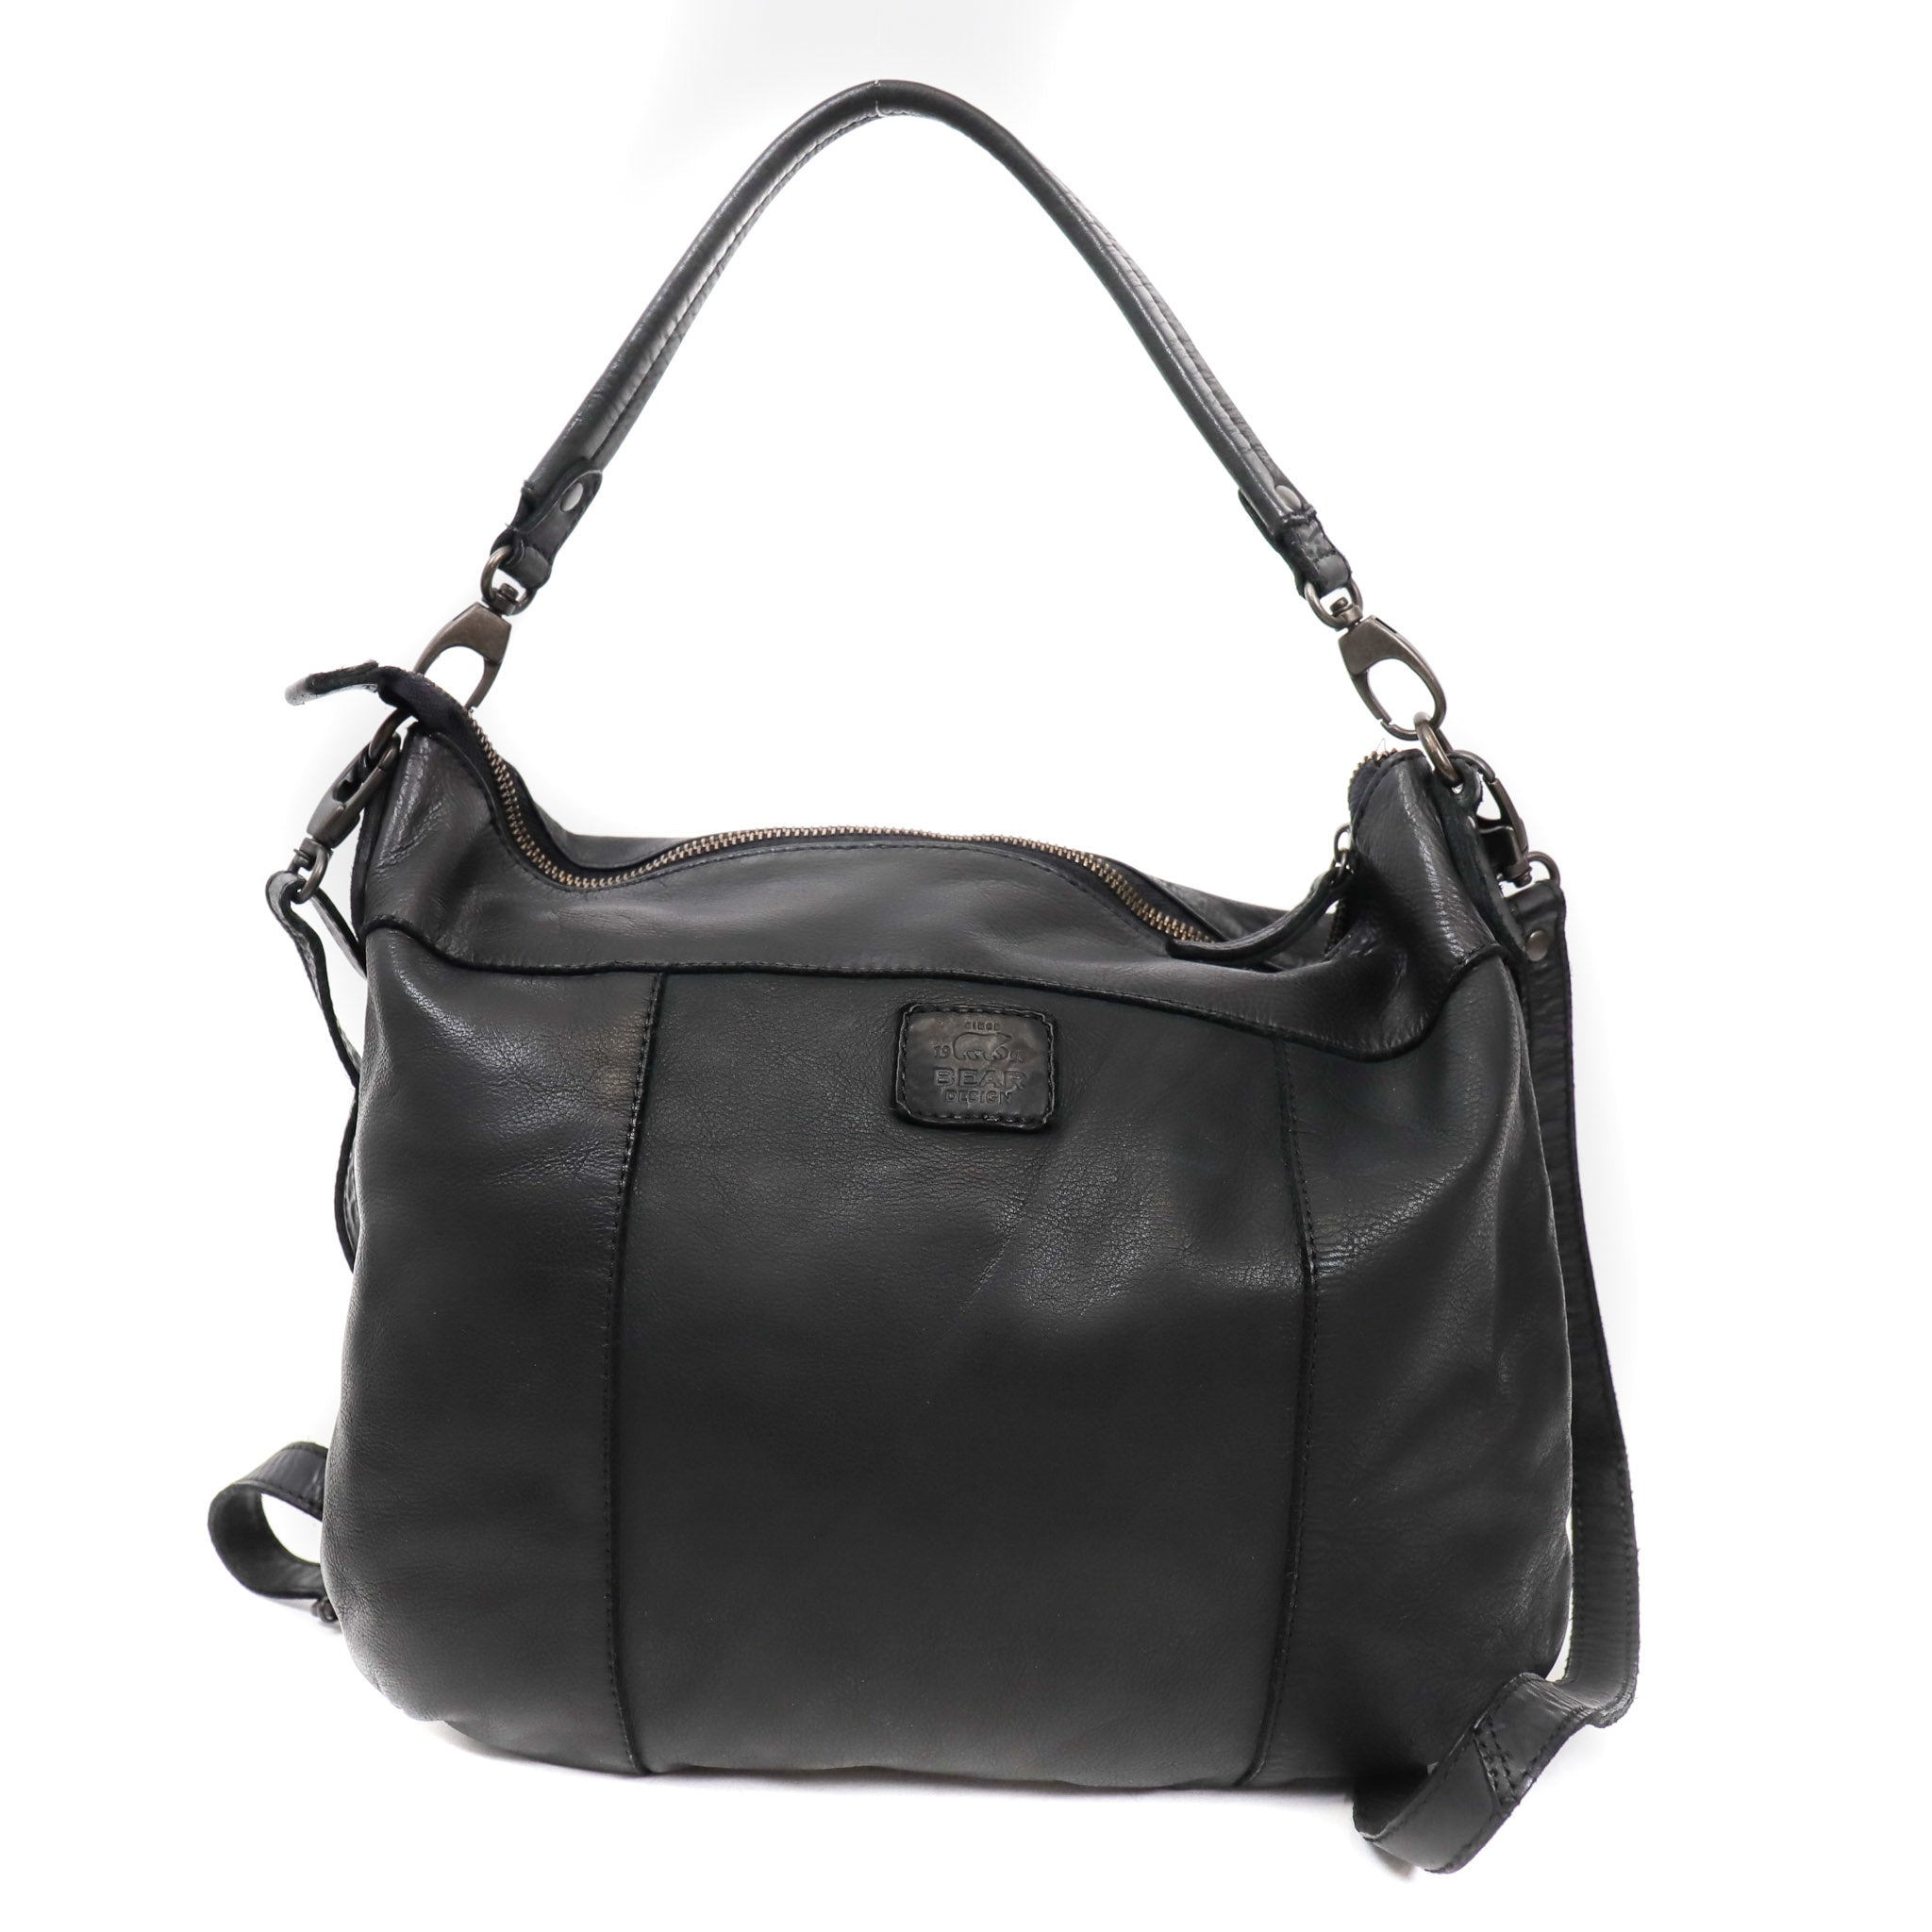 Pouch bag 'Megan' black - CL 35658